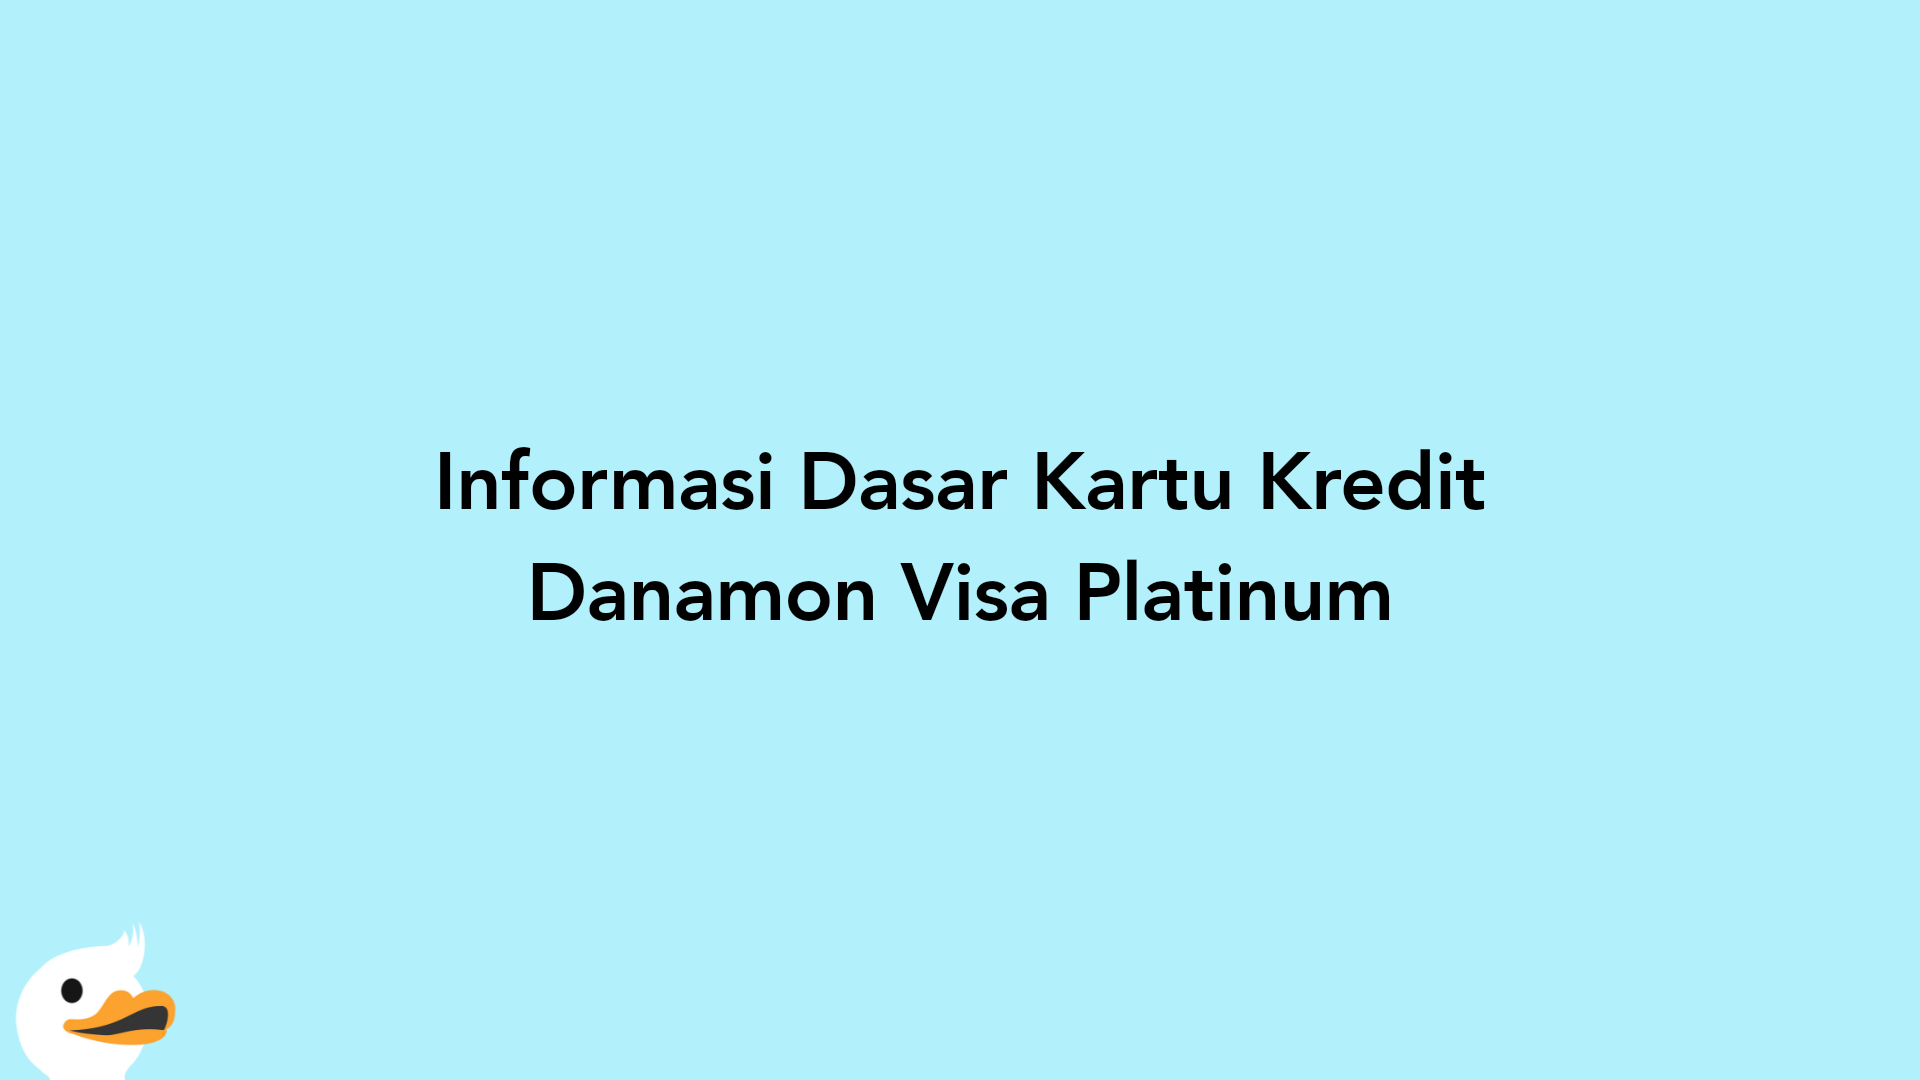 Informasi Dasar Kartu Kredit Danamon Visa Platinum